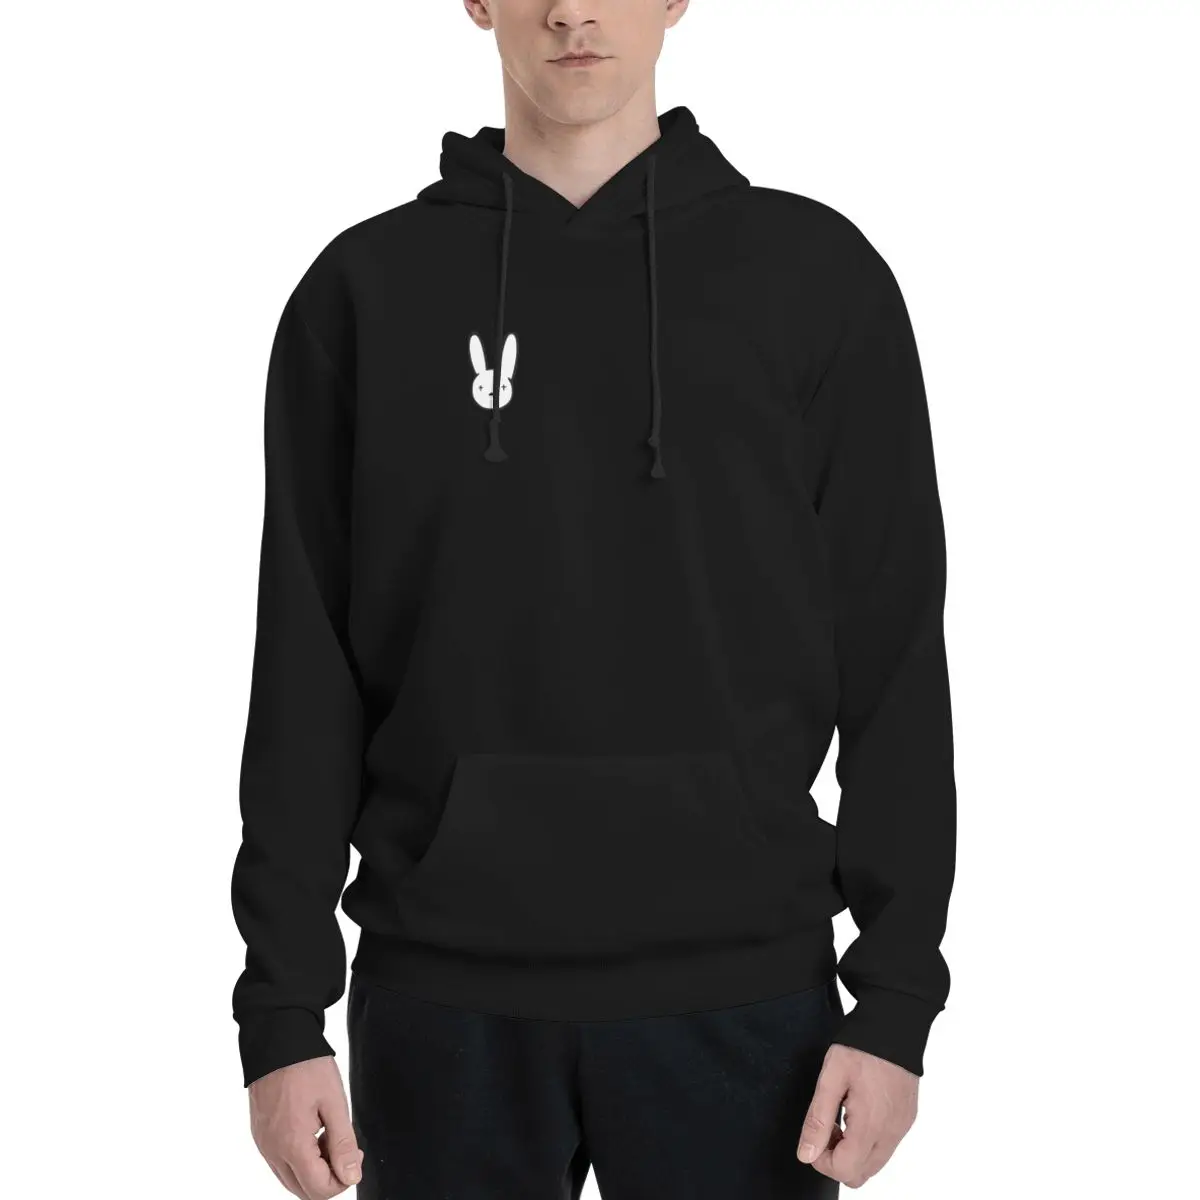 Наклейка Bad Bunny Лучшего качества - Наклейка с Логотипом Bad Bunny x100PRE Пуловер С капюшоном мужская осенняя одежда мужская одежда мужская толстовка